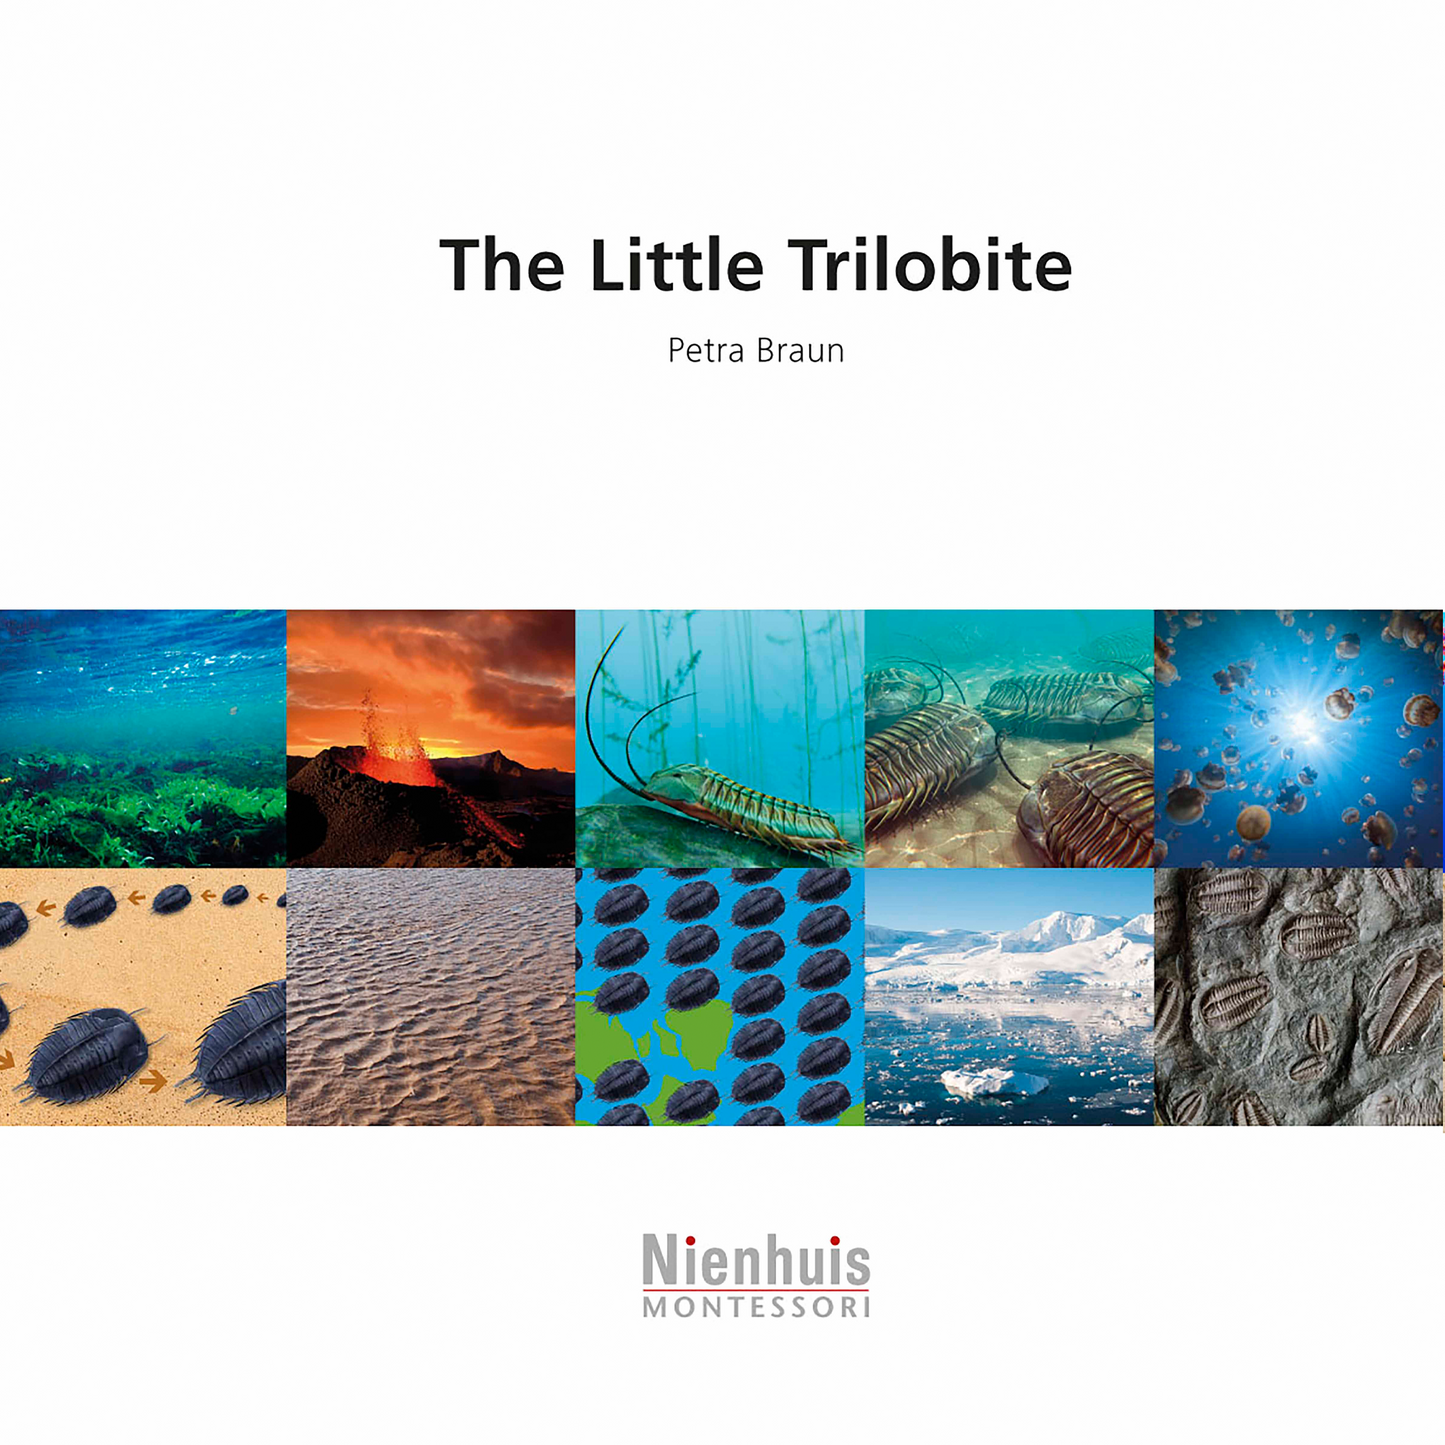 The Little Trilobite - Nienhuis AMI